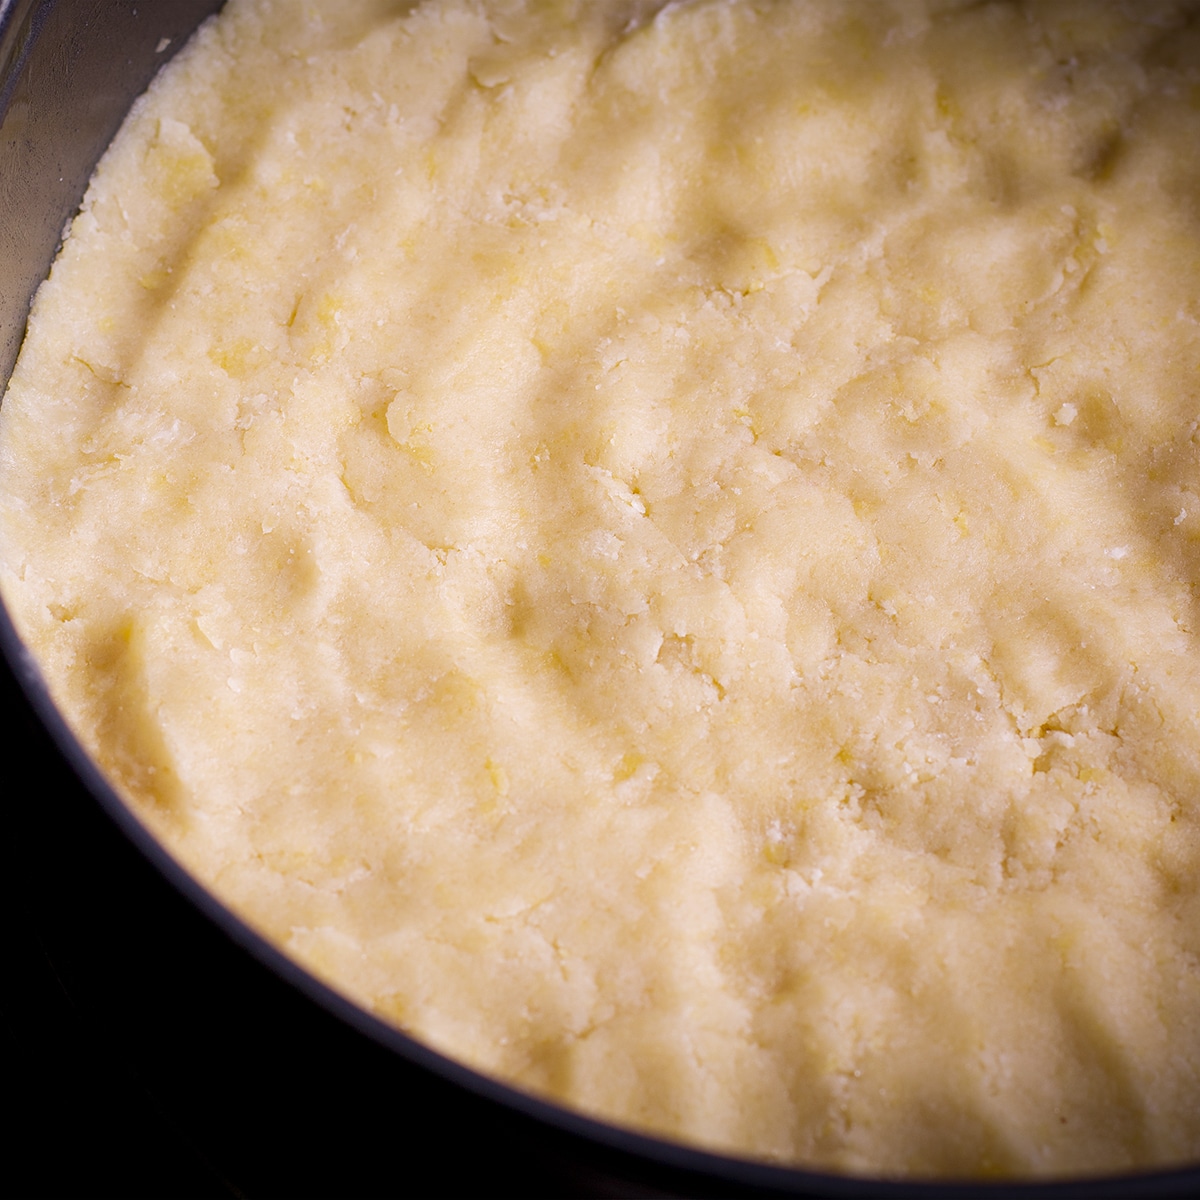 Pressing shortbread dough into a springform pan.